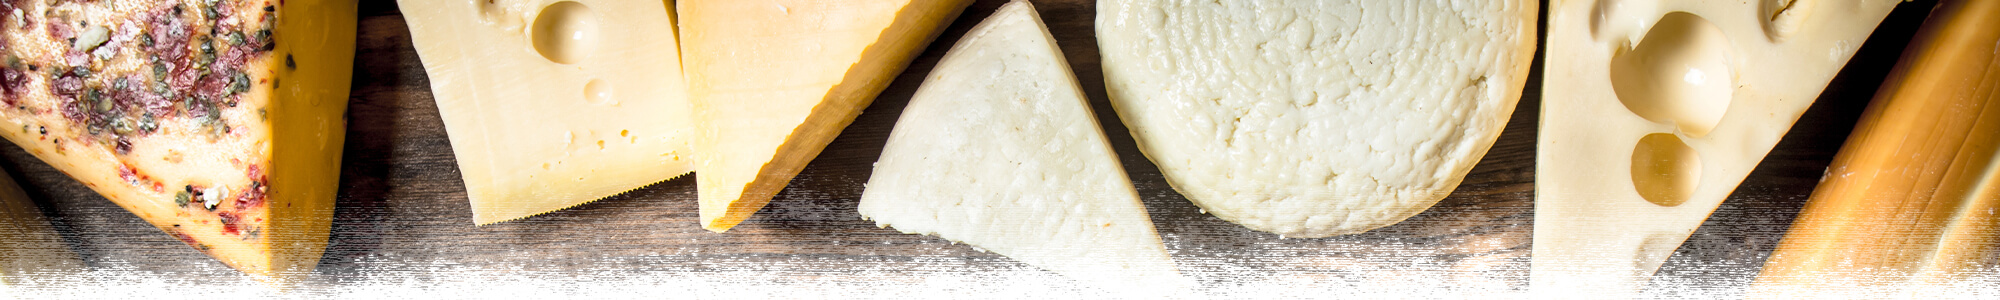 Handmade Artisan Cheese In Wisconsin